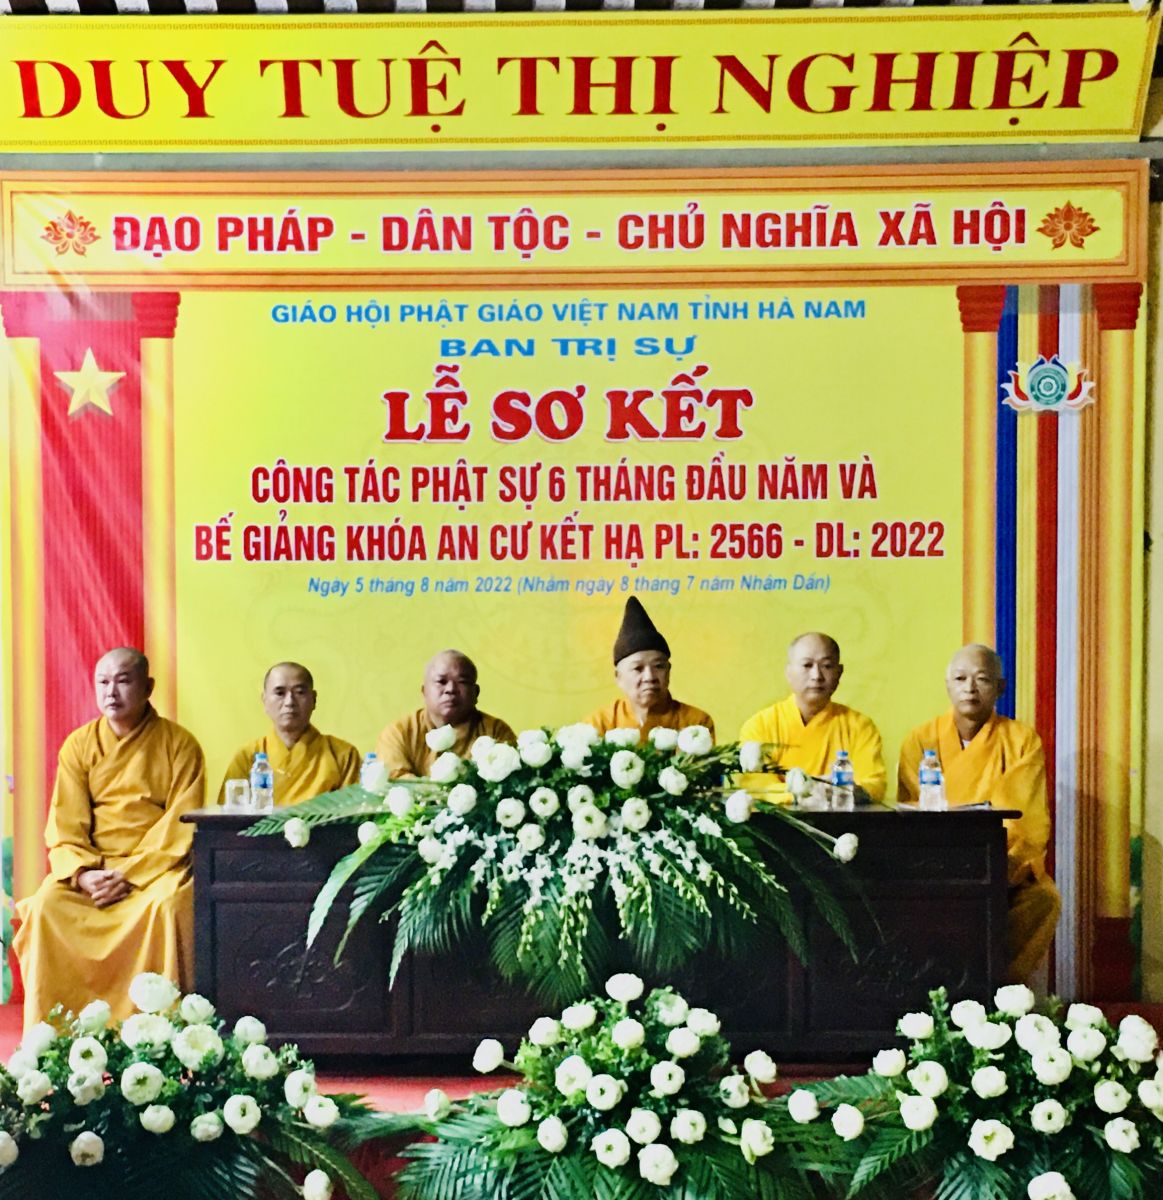 Phật Giáo Hà Nam tổ chức  lễ sơ kết 06 tháng đầu năm và Bế giảng khoá an cư kiết hạ PL.2566.